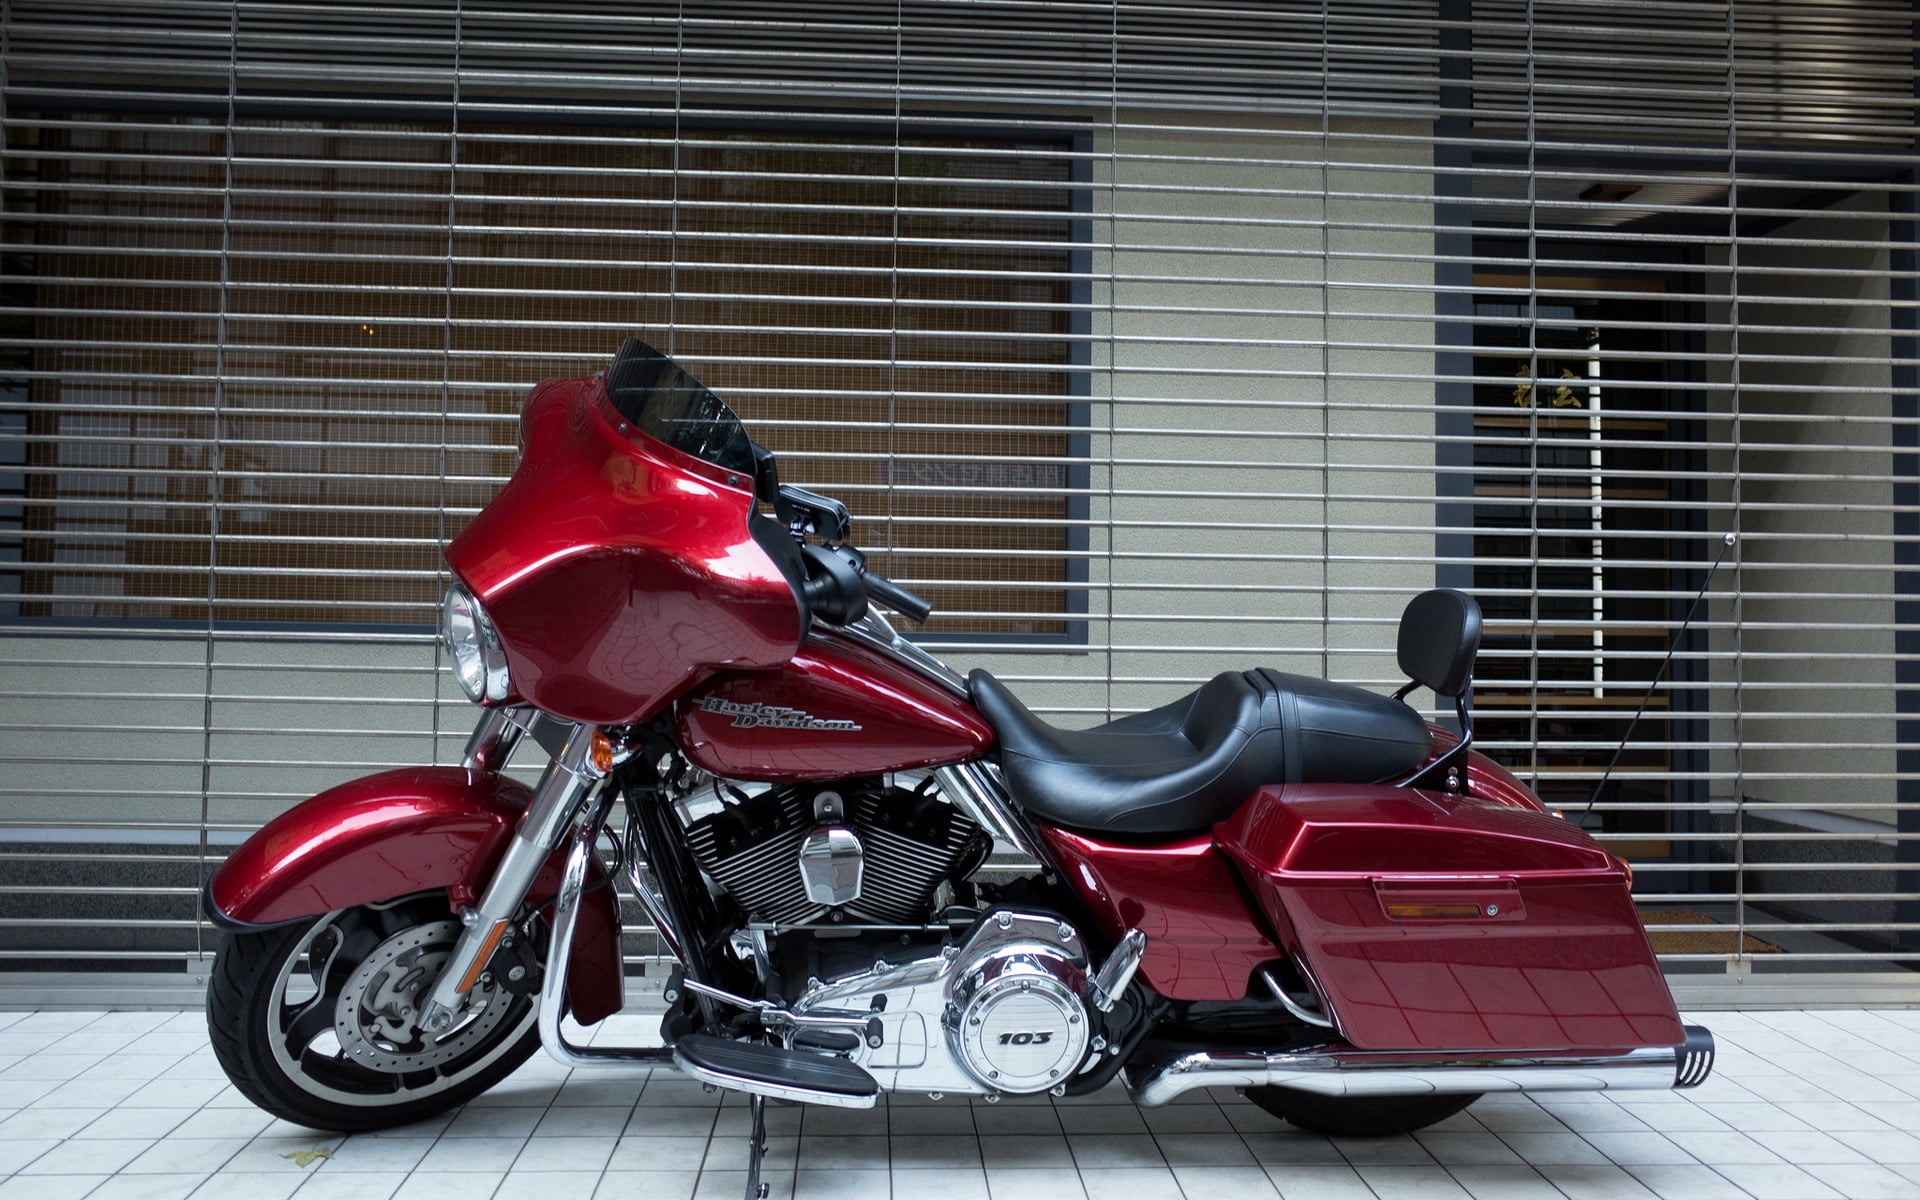 red touring cruiser motorcycle, harley davidson, style, bike